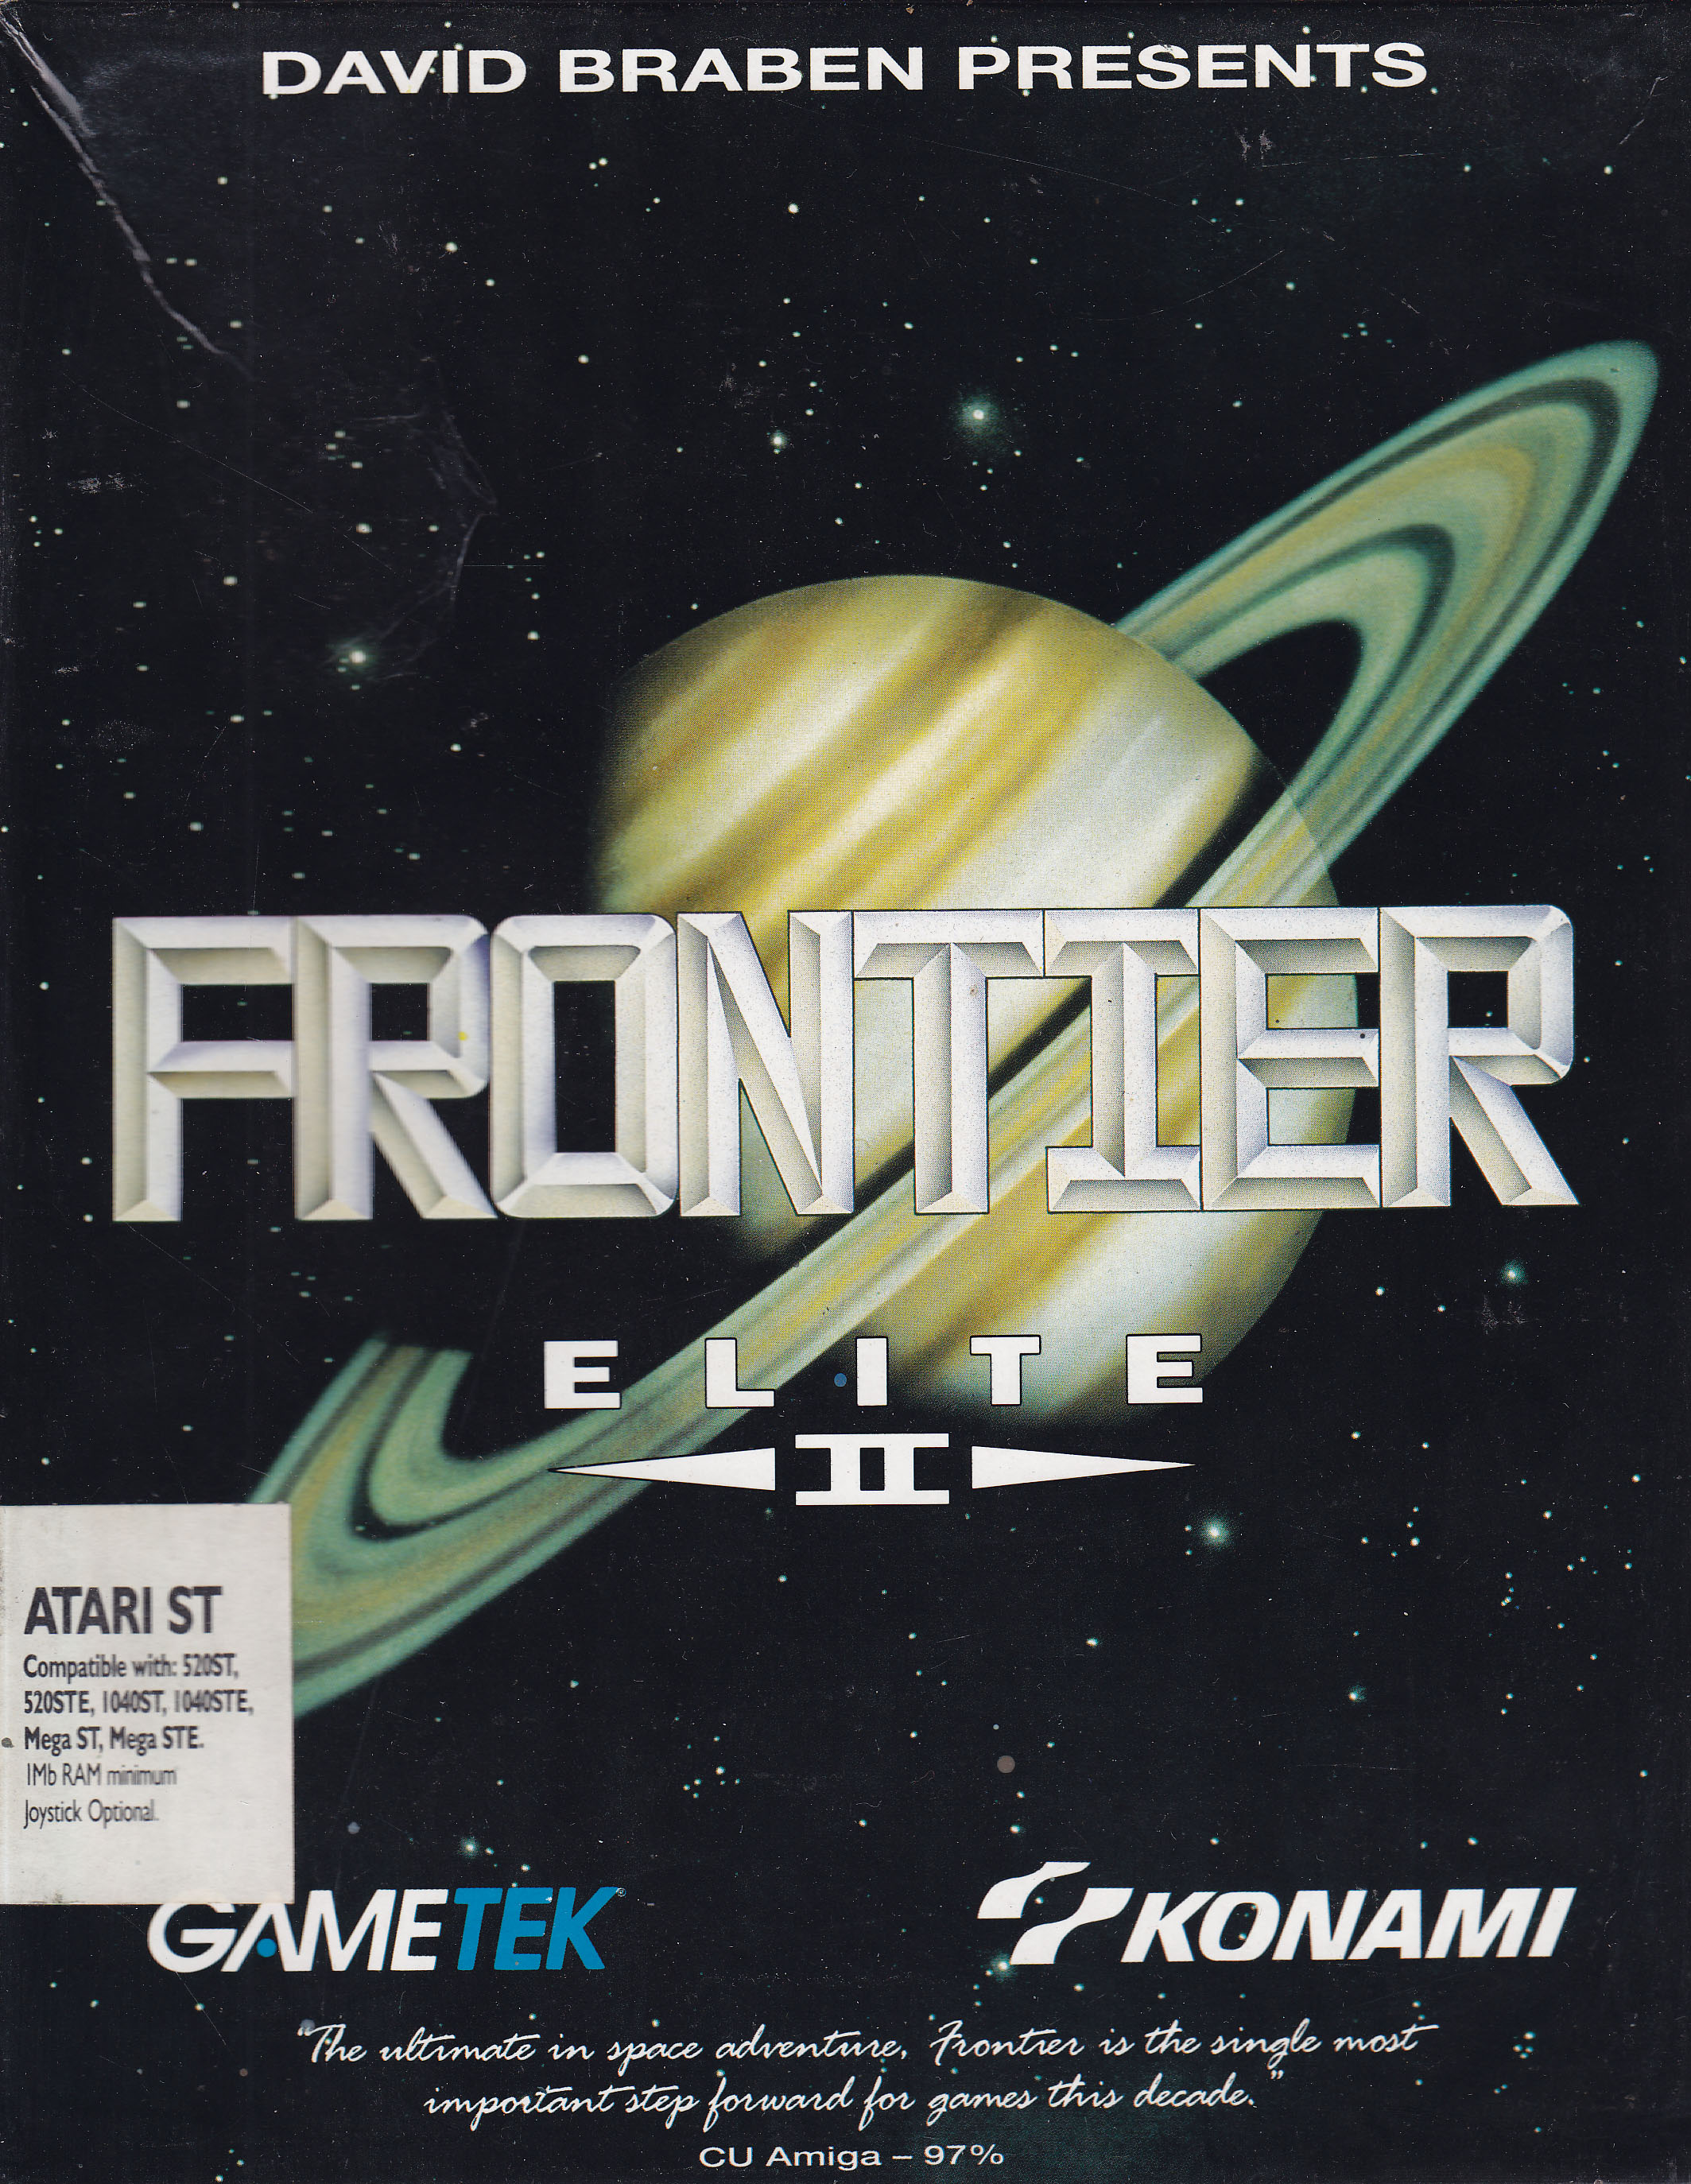 frontier_elite_II_atari_st_front_cover.j